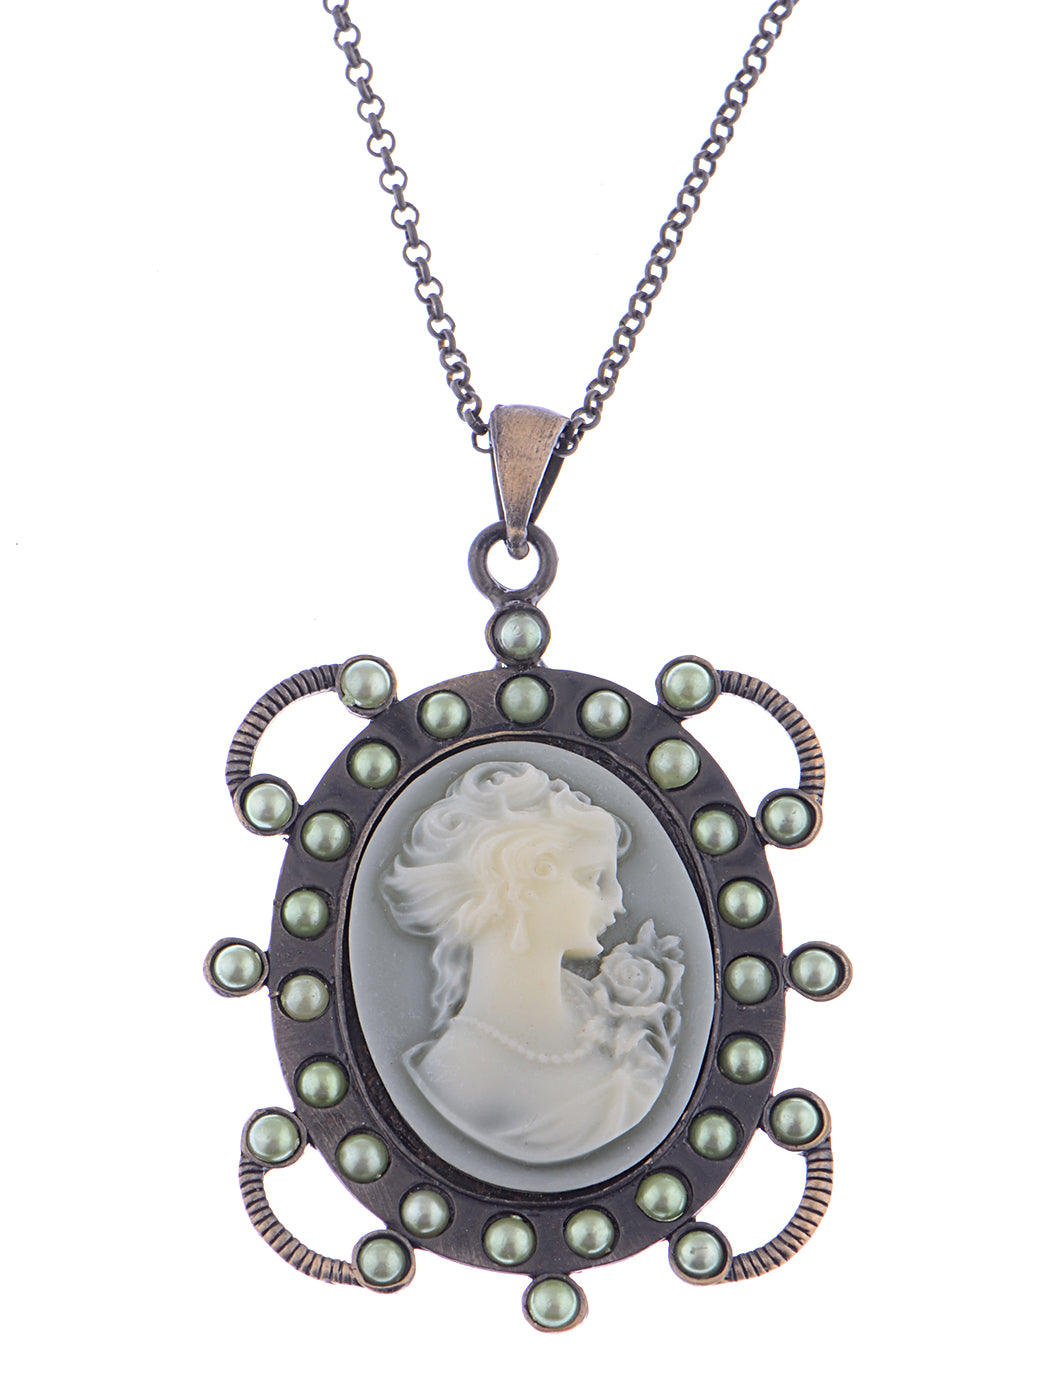 Vintage Steampunk Antique Design Cameo Lady Maid Portrait Necklace Pendant